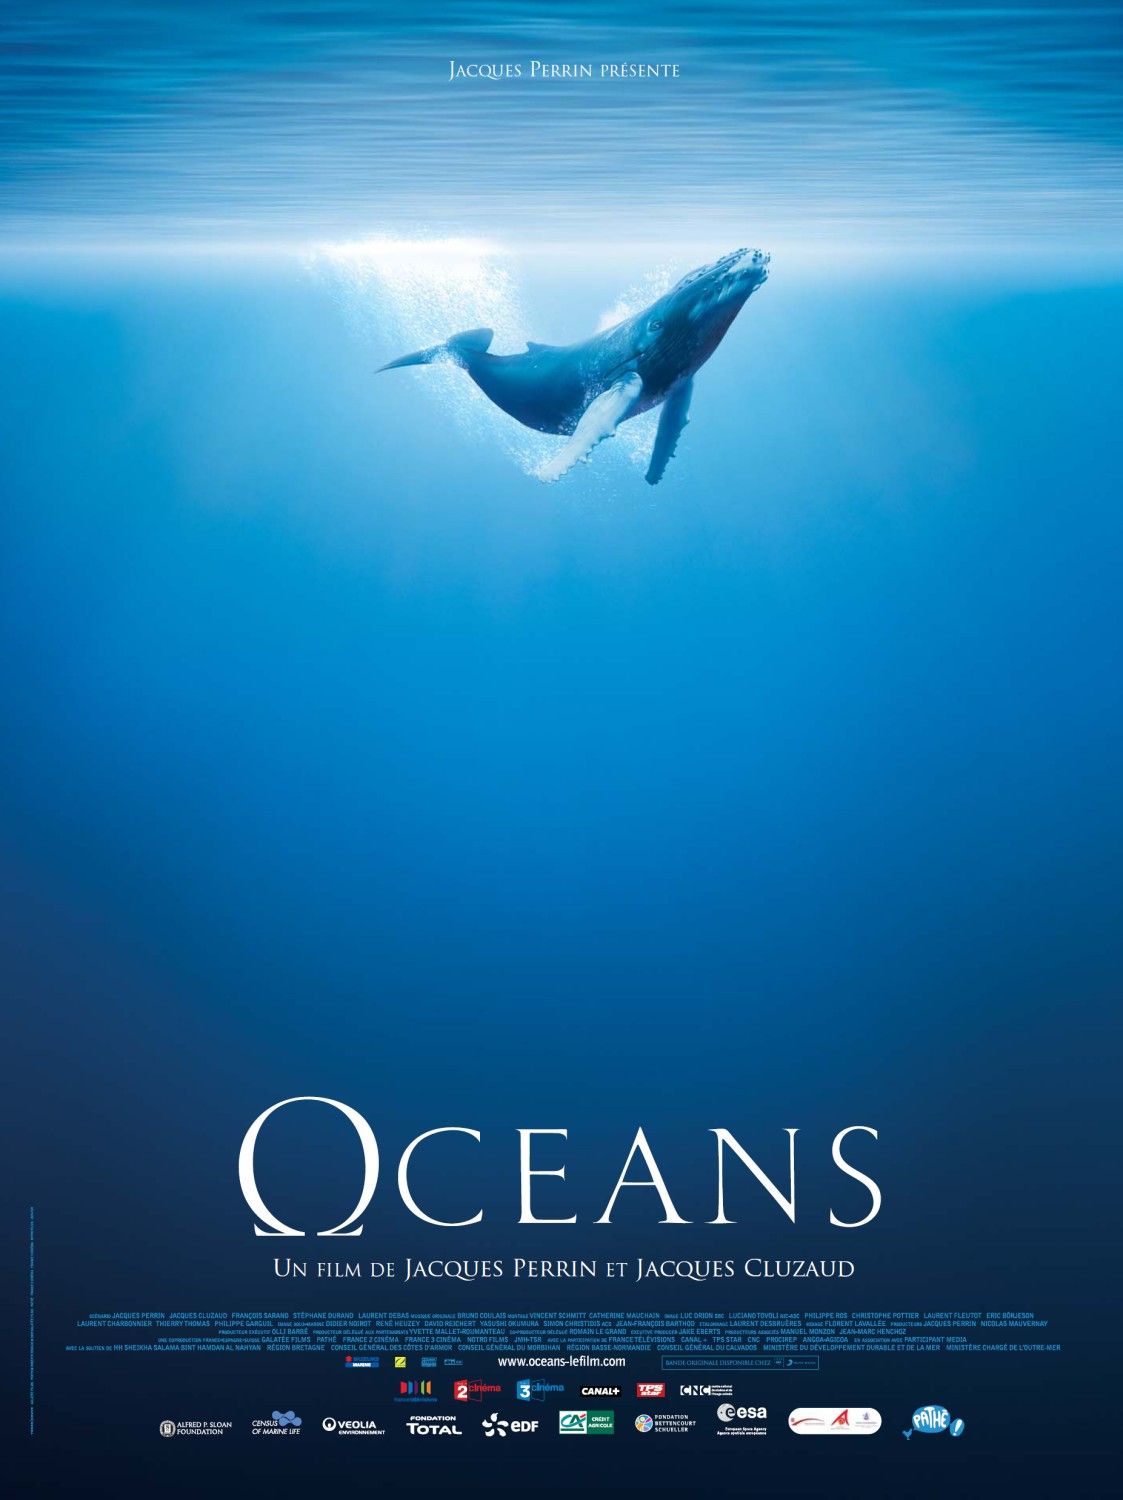 Oceans menjadi film dokumenter terbaik sepanjang masa